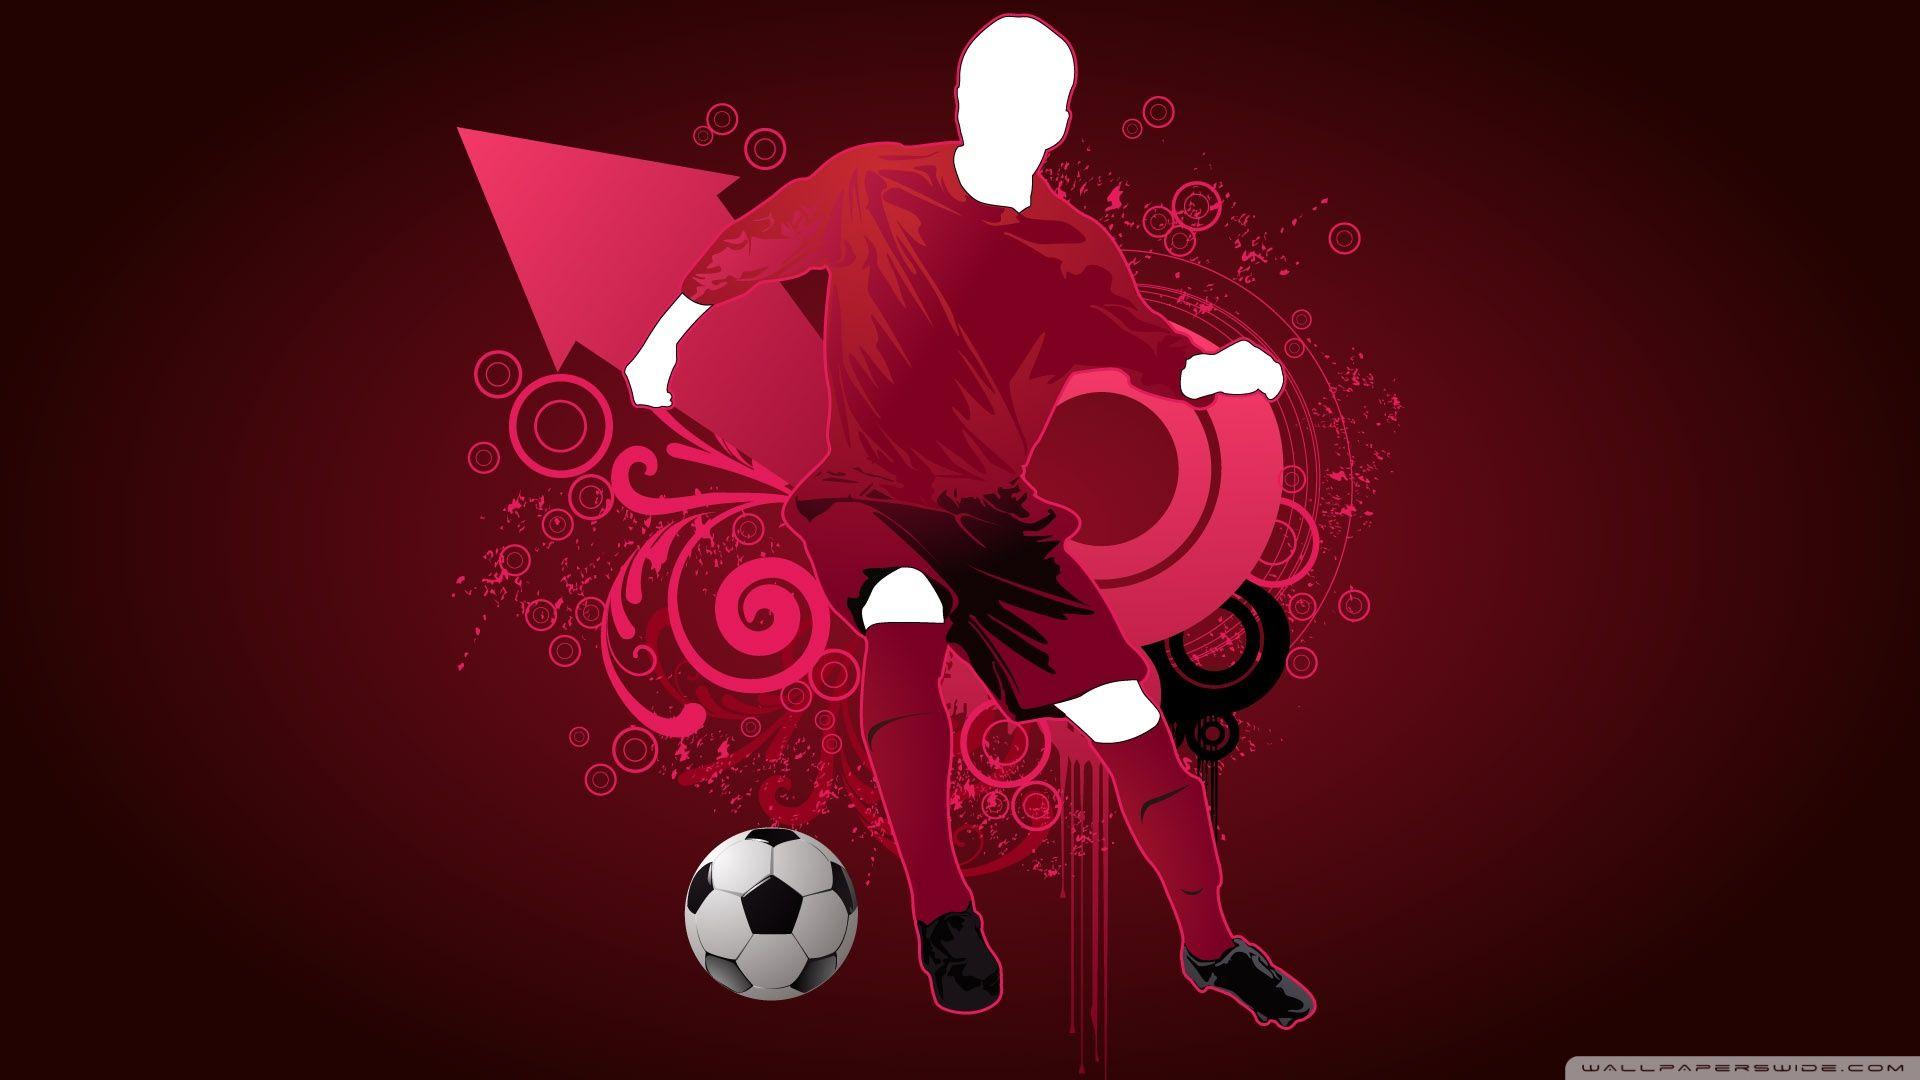 Soccer Player HD desktop wallpaper, Widescreen, High Definition